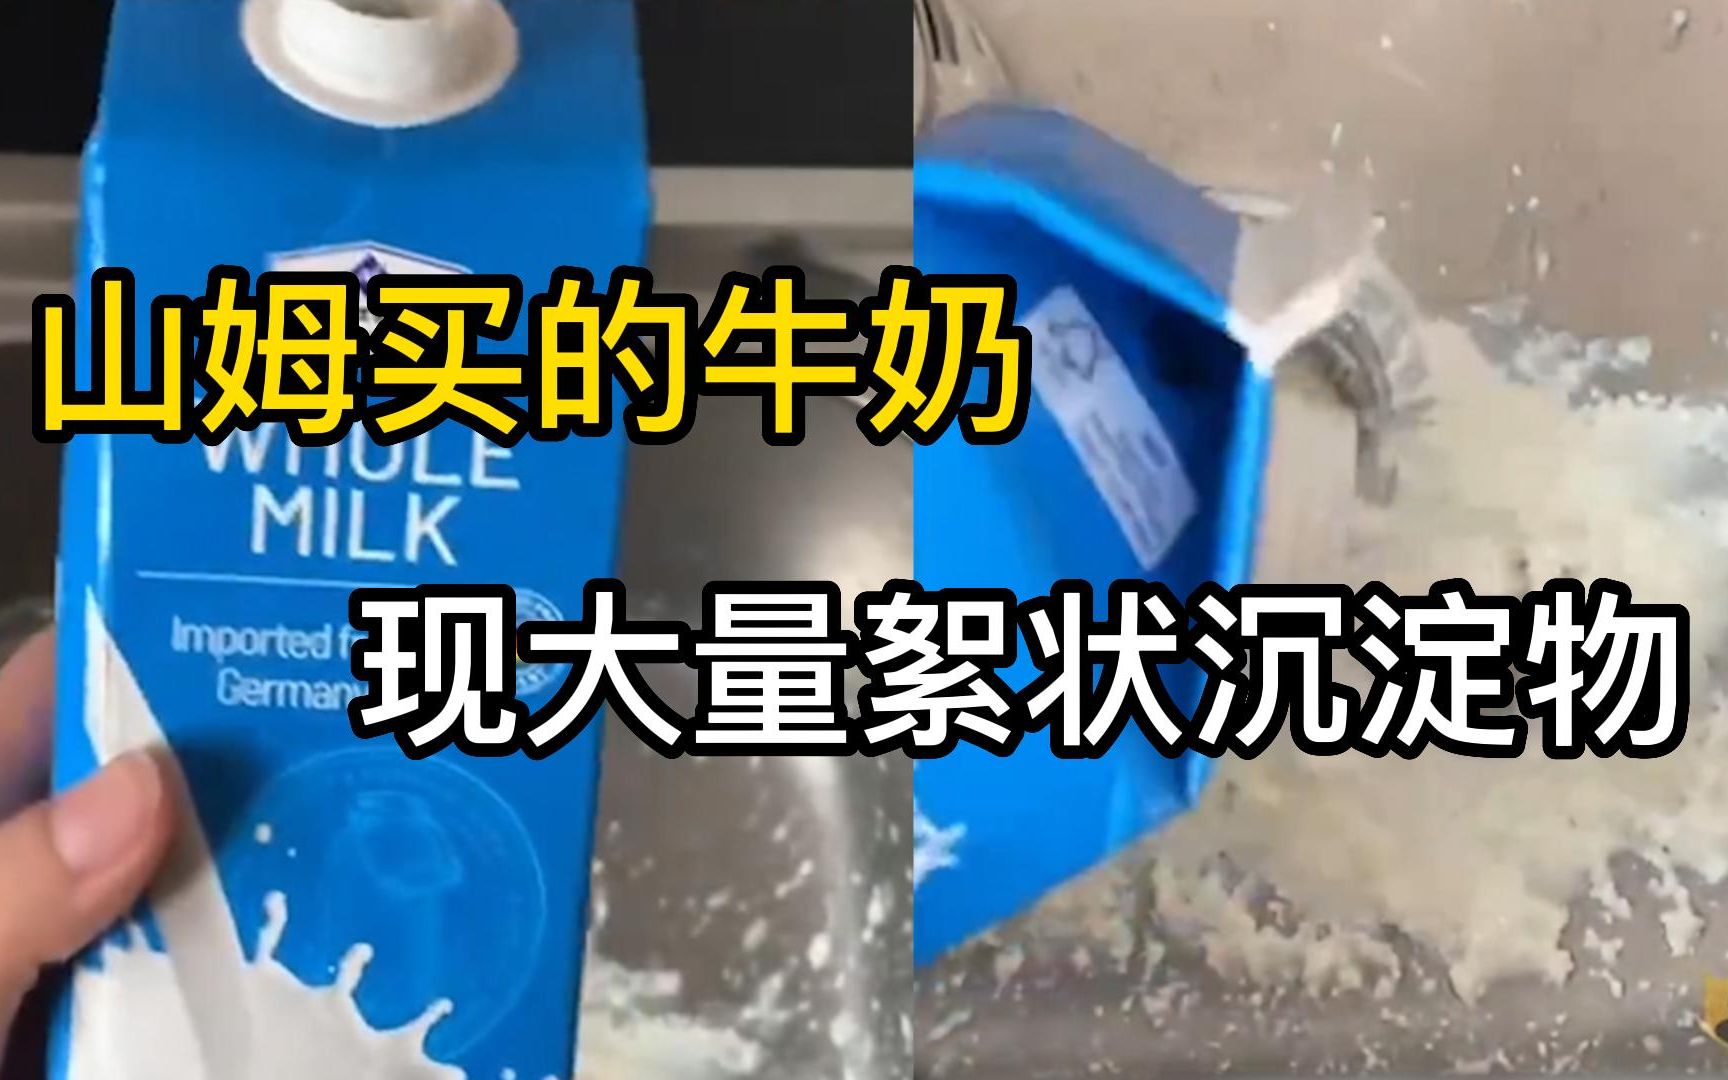 山姆买的牛奶现大量絮状沉淀物